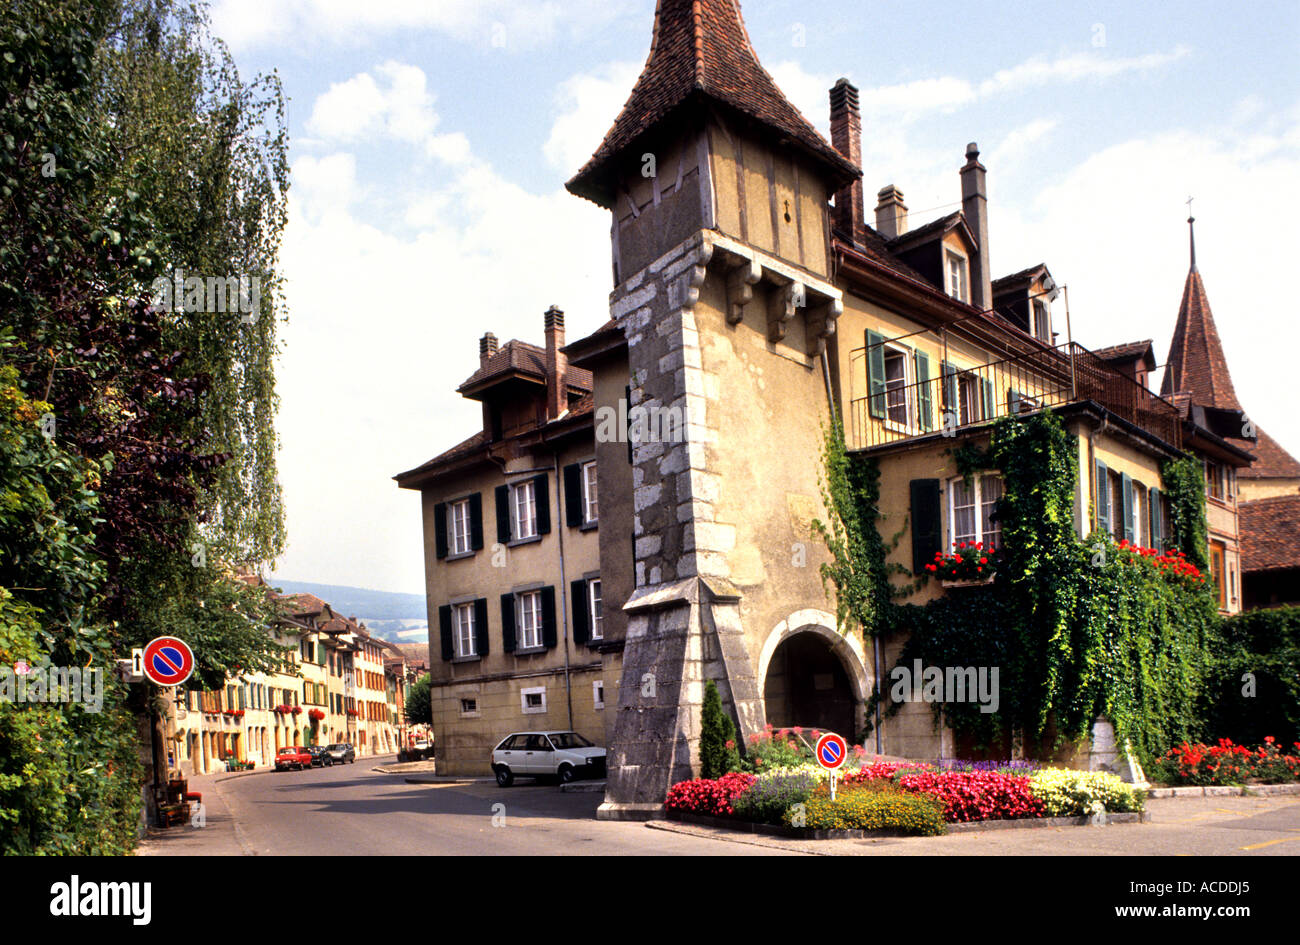 Der Schweiz Le Landeron halbe Holz historische Stadt Blumen Frankreich Teil  Französisch sprechende Sprache, Rede, Zunge Stockfotografie - Alamy